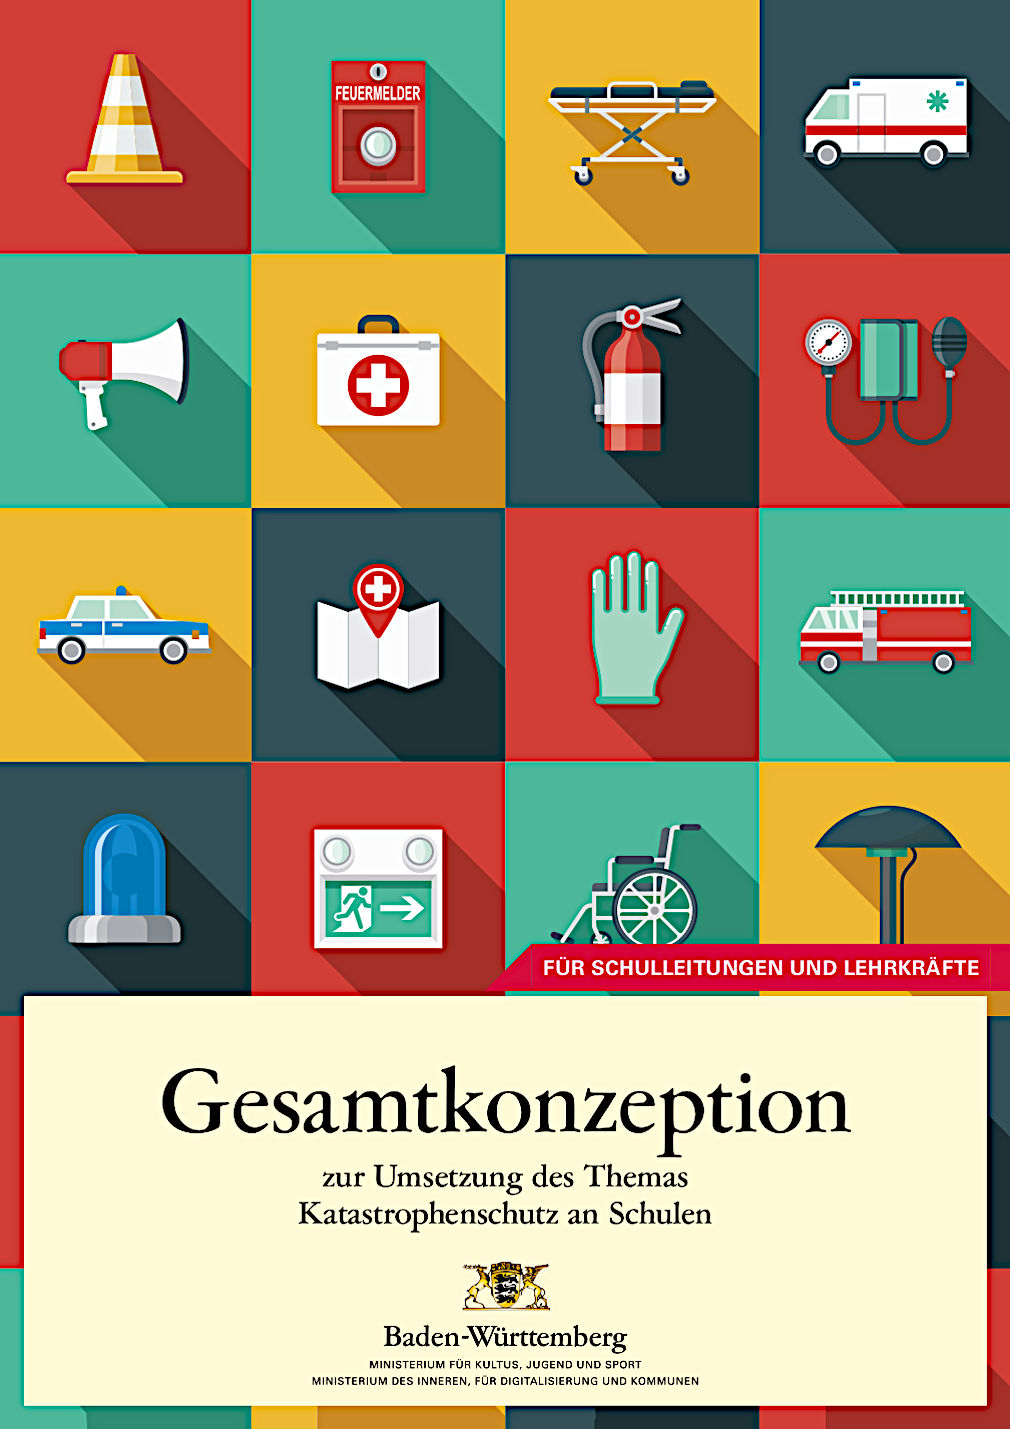 PDF-Download: Broschüre des KM BW: Gesamtkonzeption zur Umsetzung des Themas Katastrophenschutz an Schulen